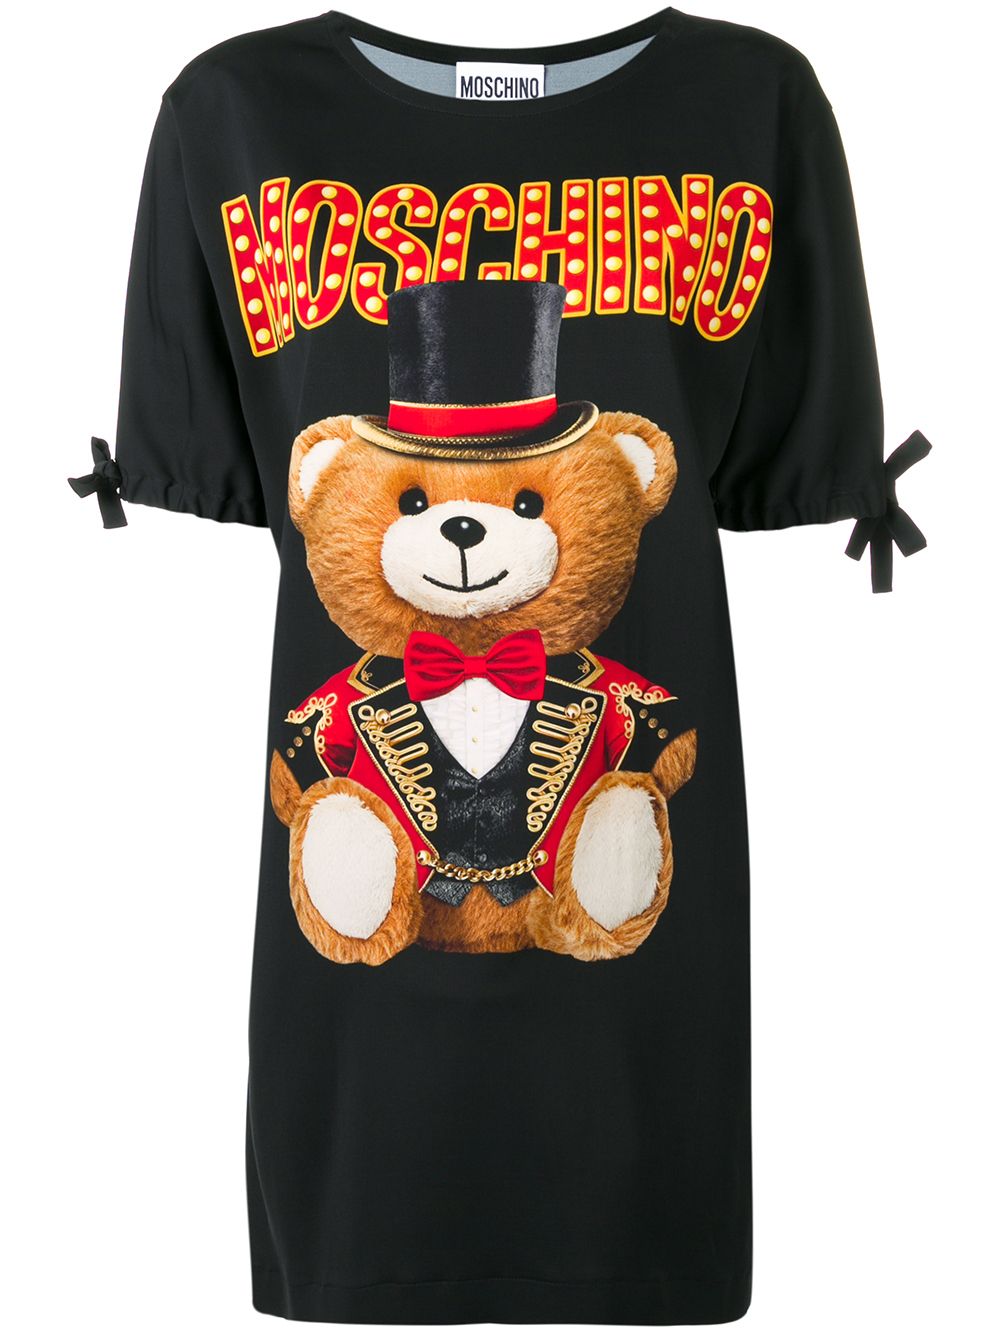 фото Moschino платье-футболка с изображением медведя